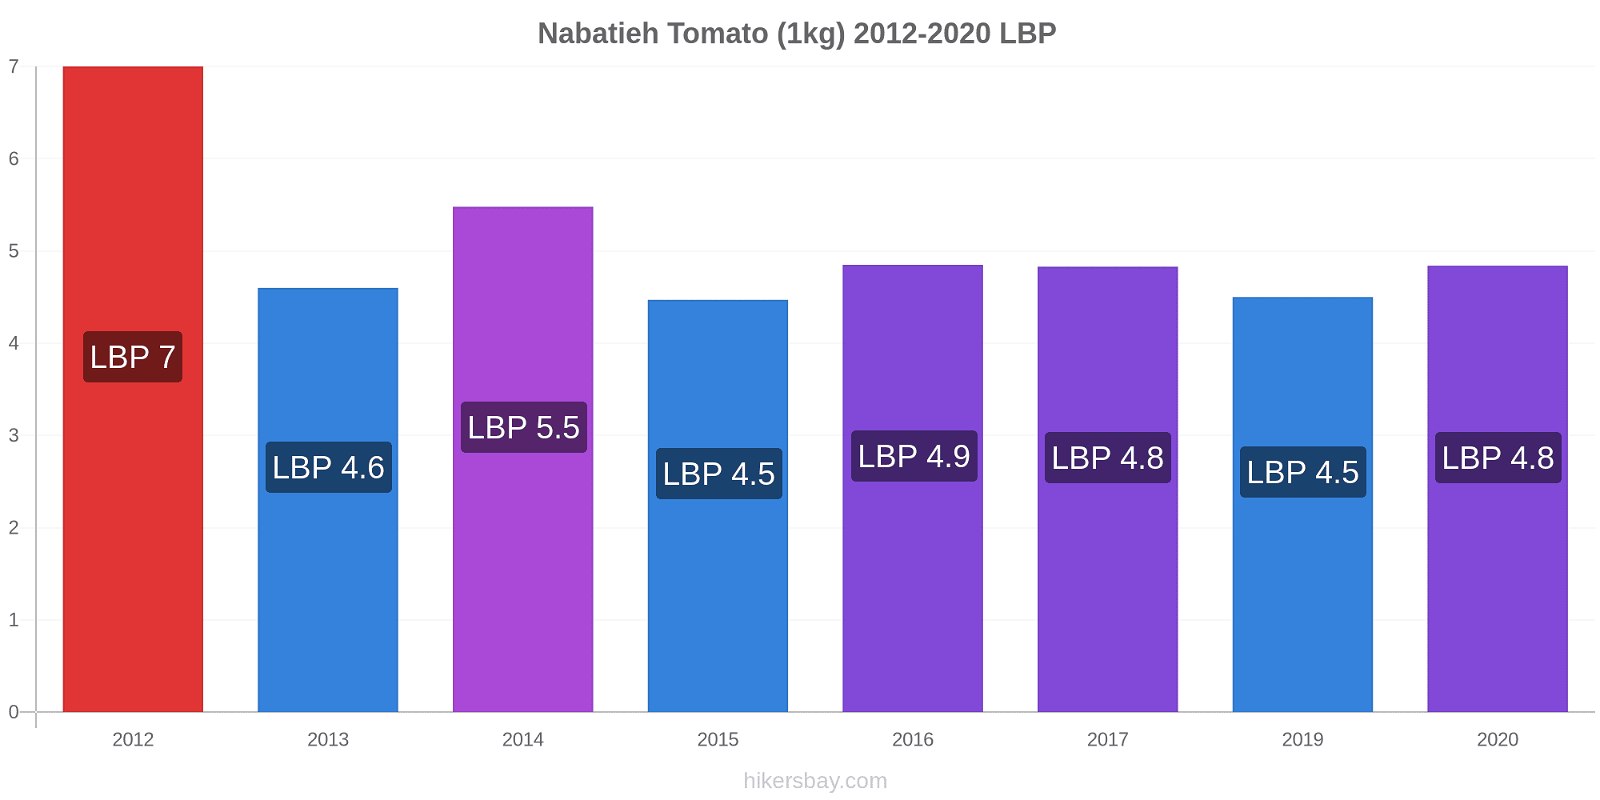 Nabatieh price changes Tomato (1kg) hikersbay.com